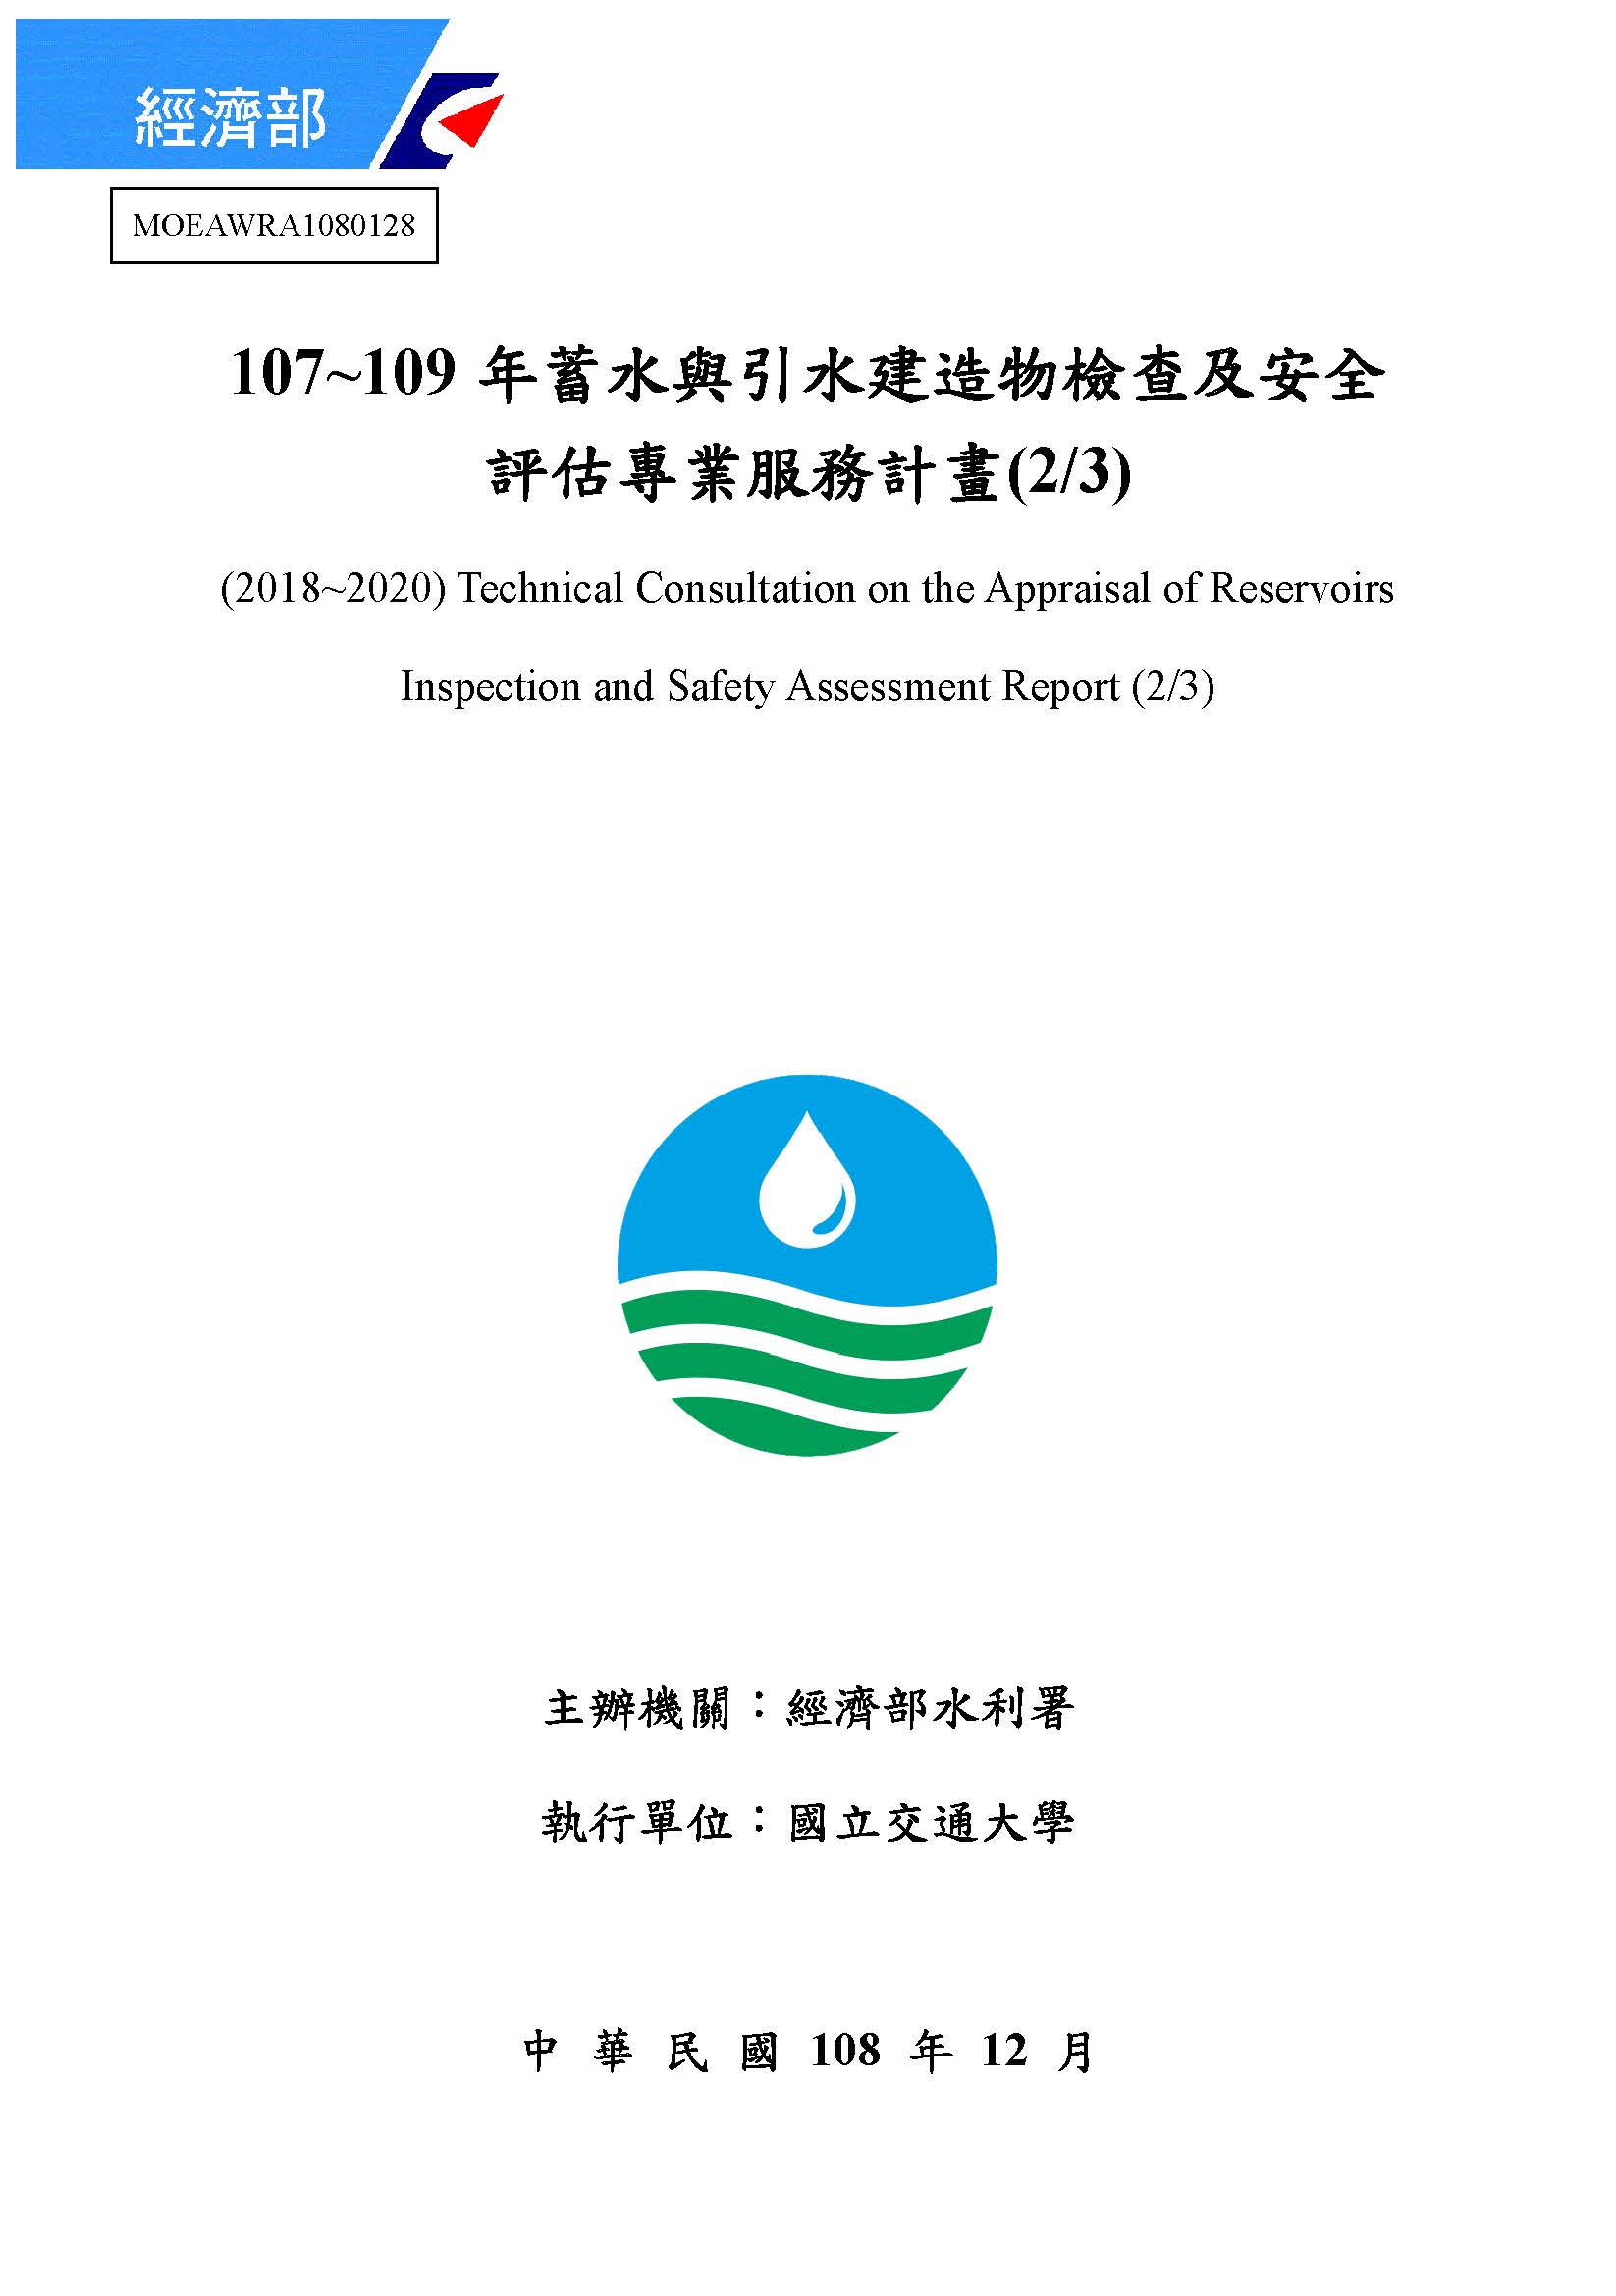 107~109年蓄水與引水建造物檢查及安全評估專業服務計畫(2/3)